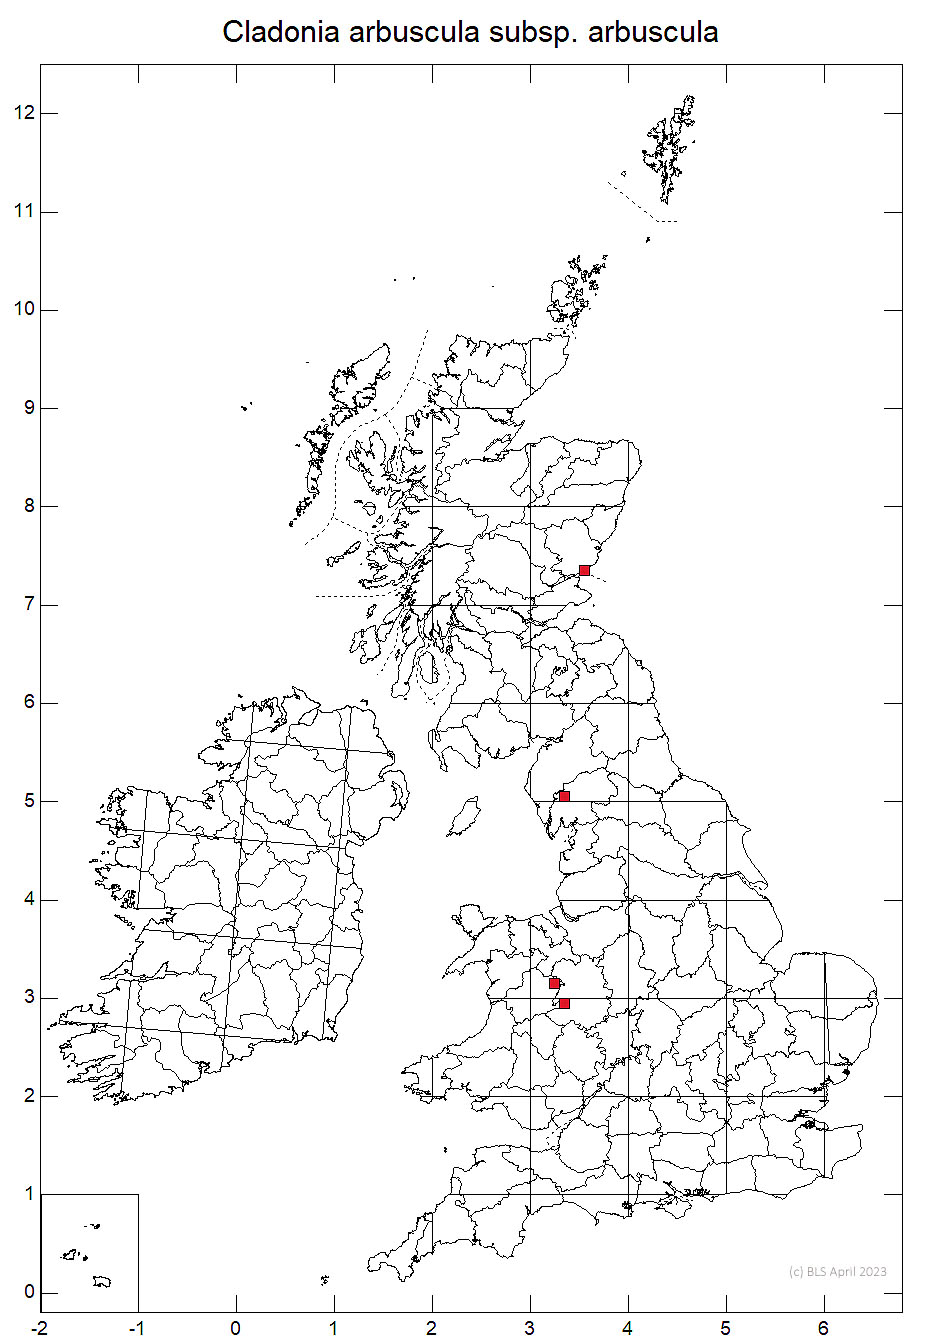 Cladonia arbuscula subsp. arbuscula 10km sq distribution map